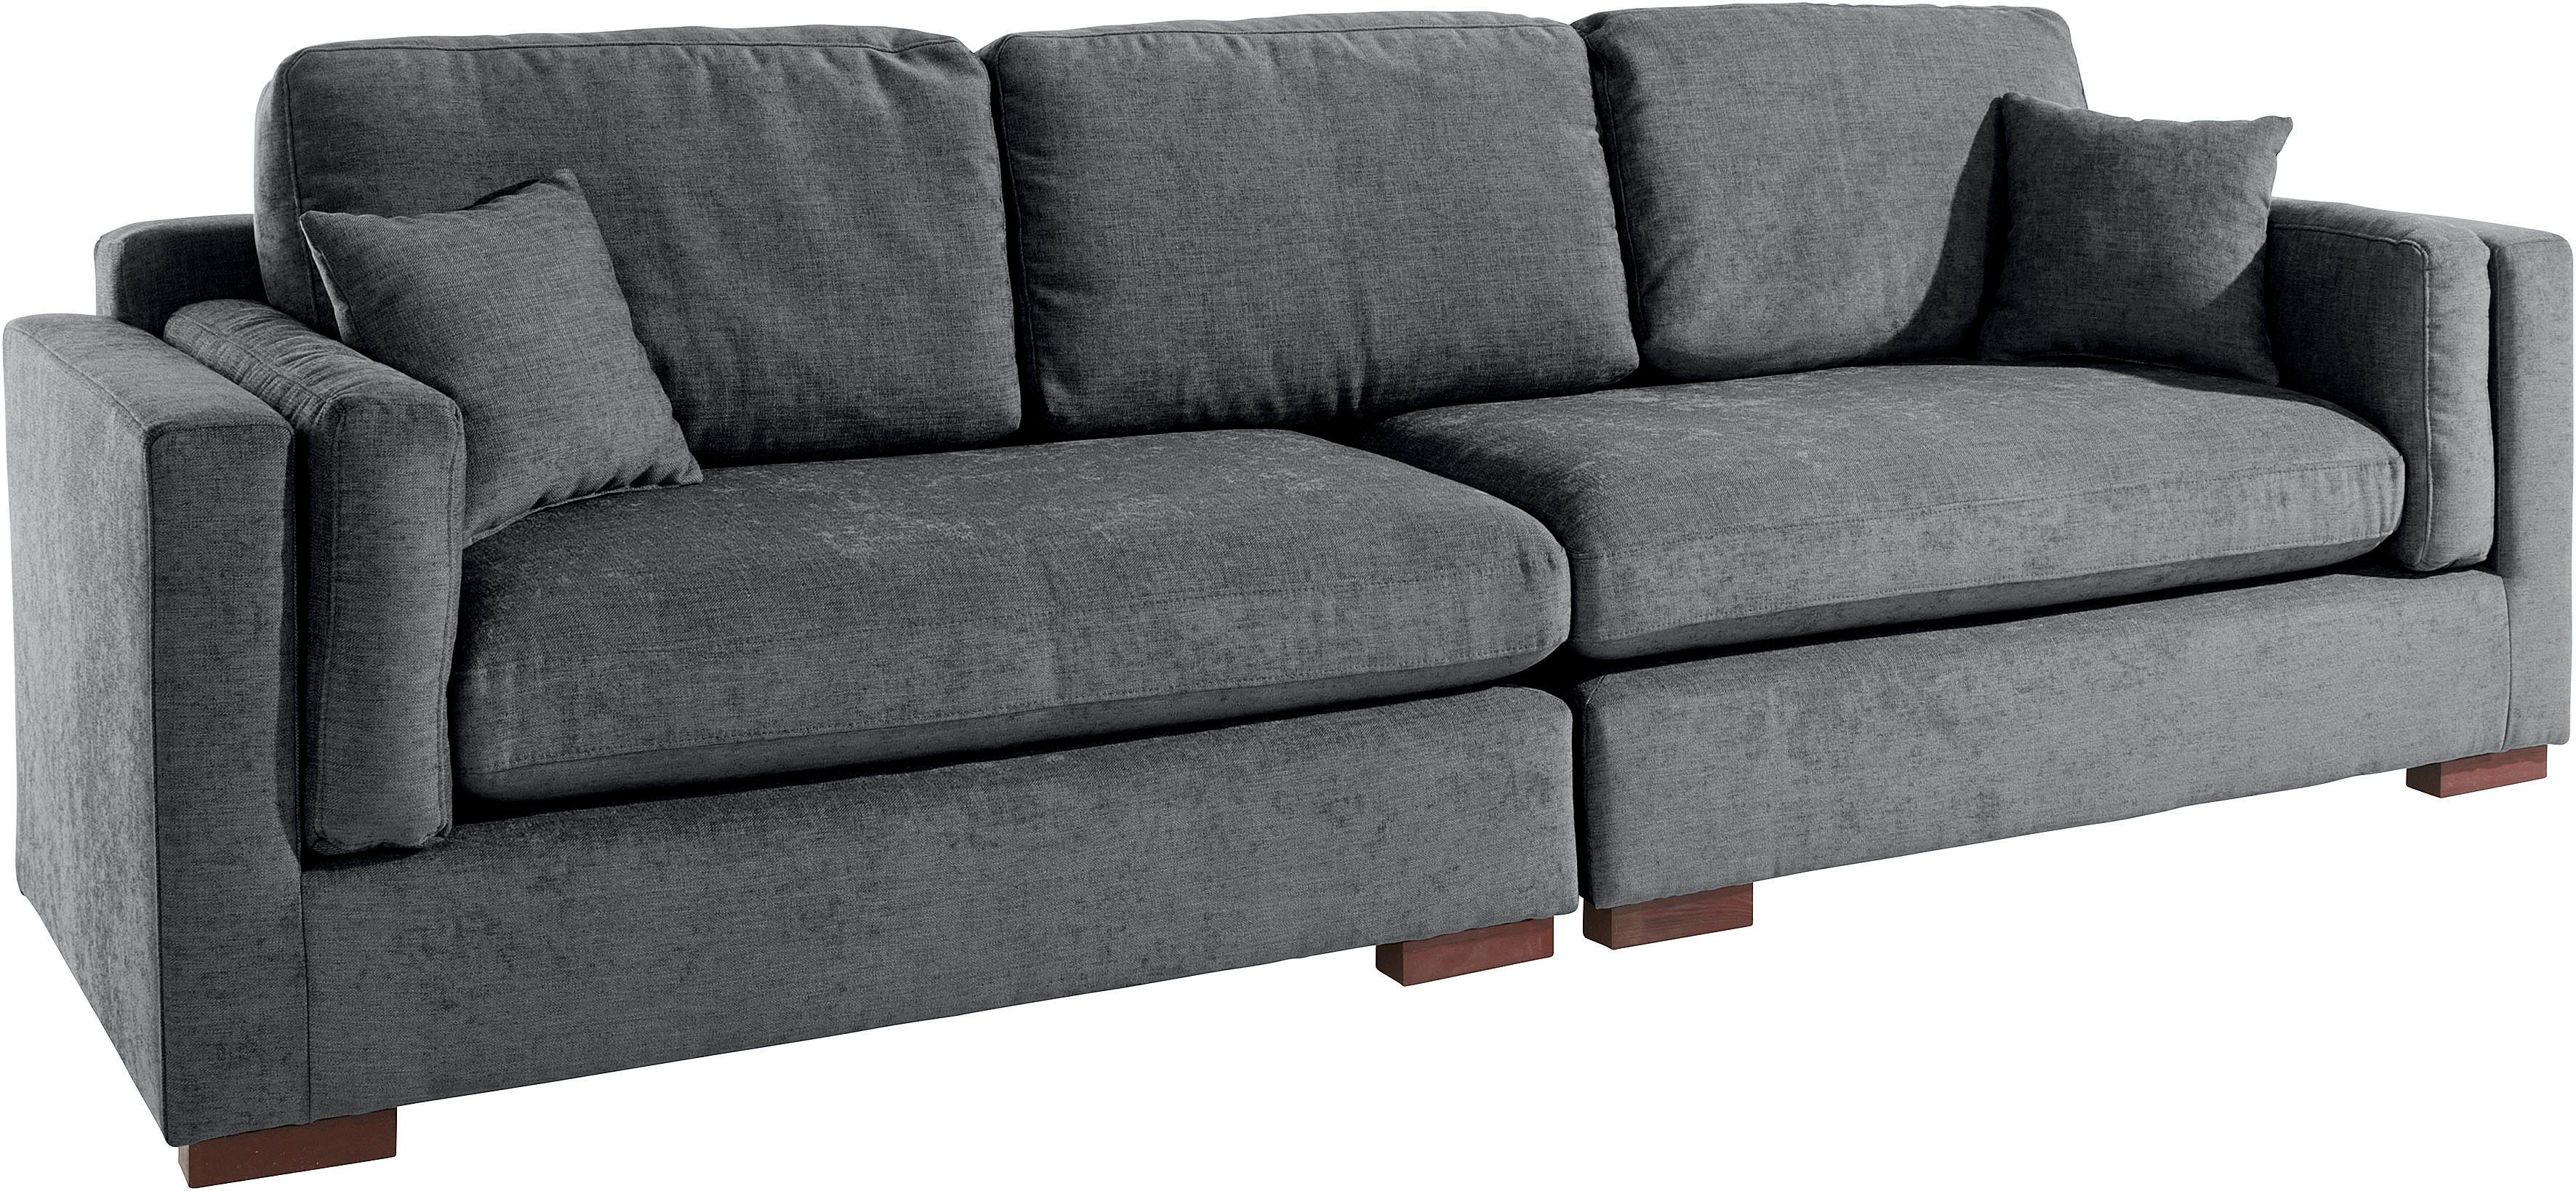 Big-Sofa Bezugsqualitäten in Home 290/96/95 Farben, Fresh vielen und Pond, B/T/H: cm affaire